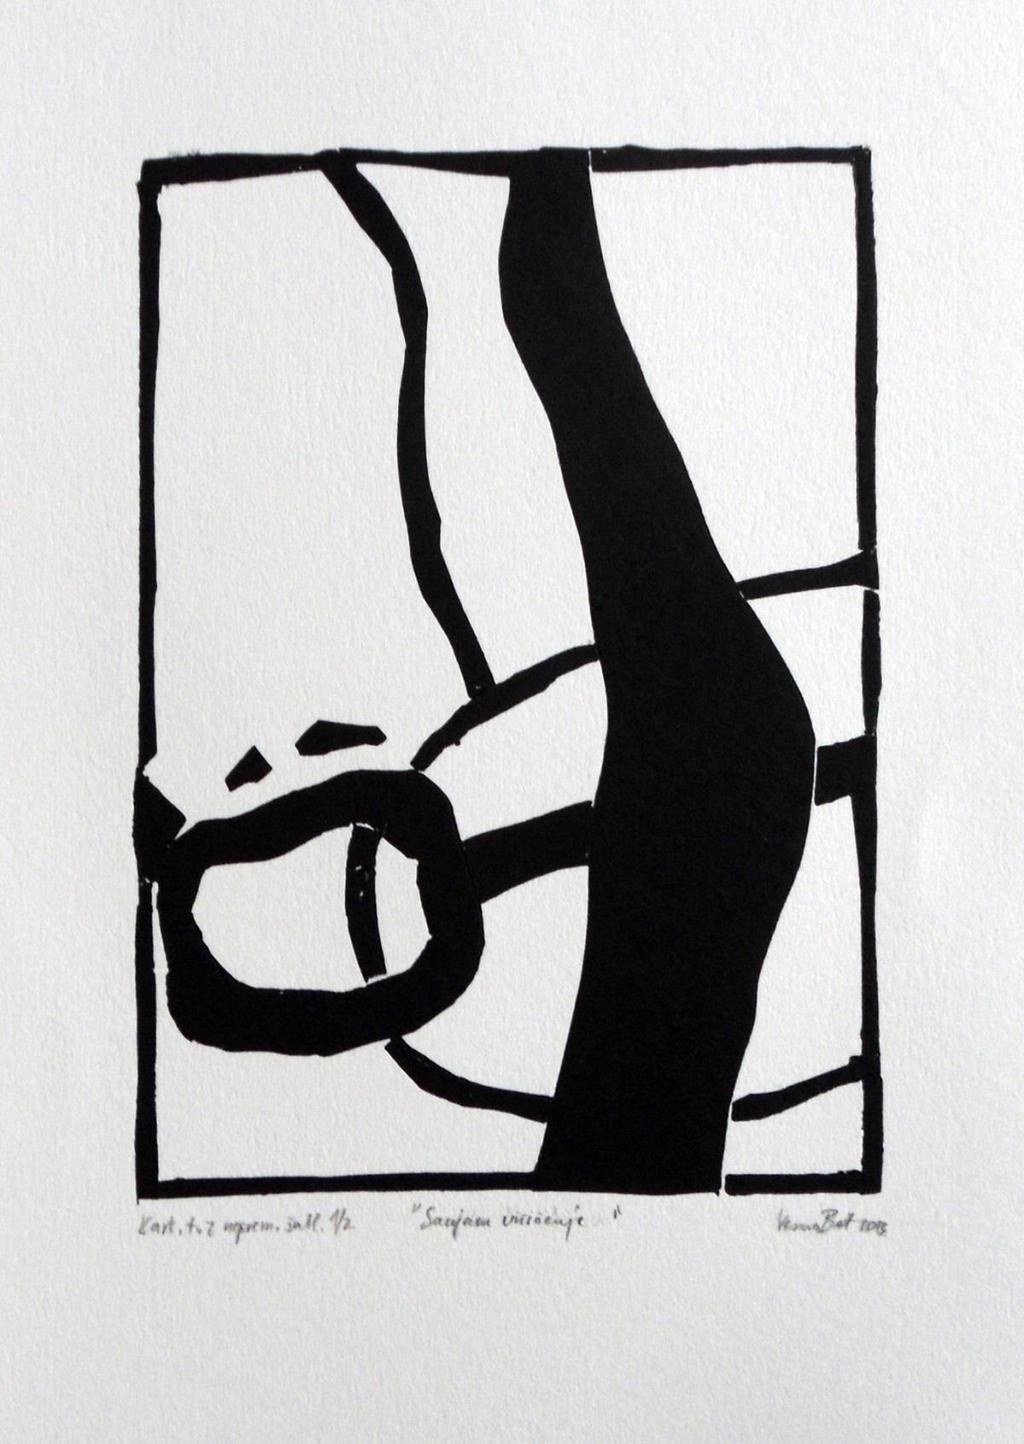 Slika 36: Vesna Bat, Sanjam uničenje, 2013, kartonski tisk z nepremično šablono, 35 x 50 cm Osnovna tehnika v kartonskem tisku.